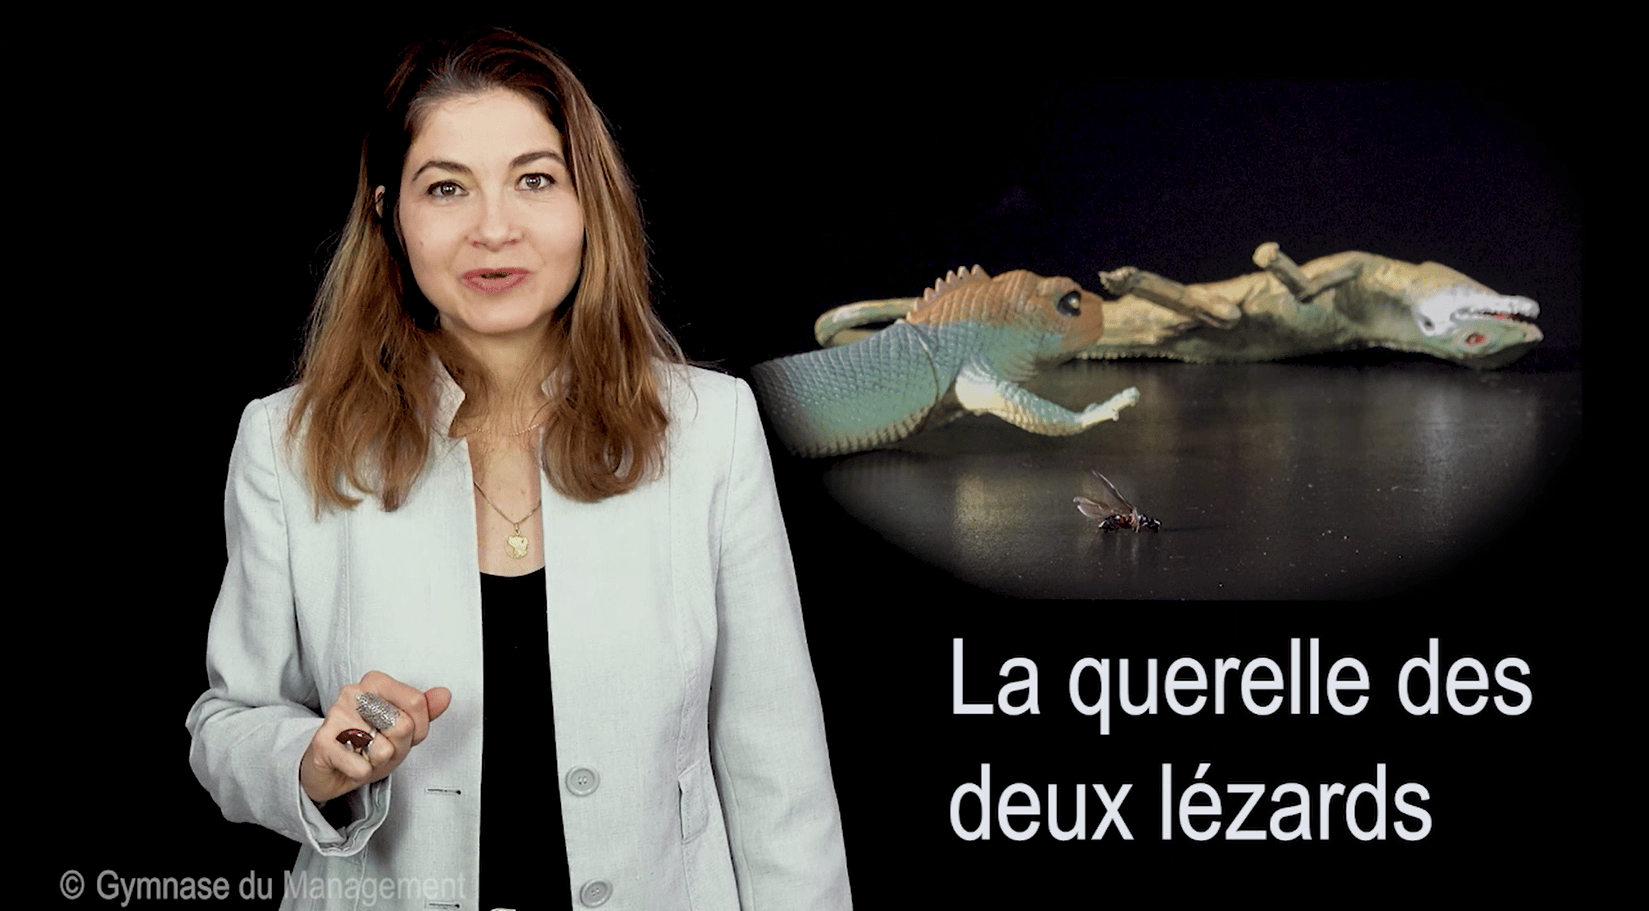 "La querelle des deux lézards" d'Amadou Hampaté Bâ, racontée par le Gymnase du Management